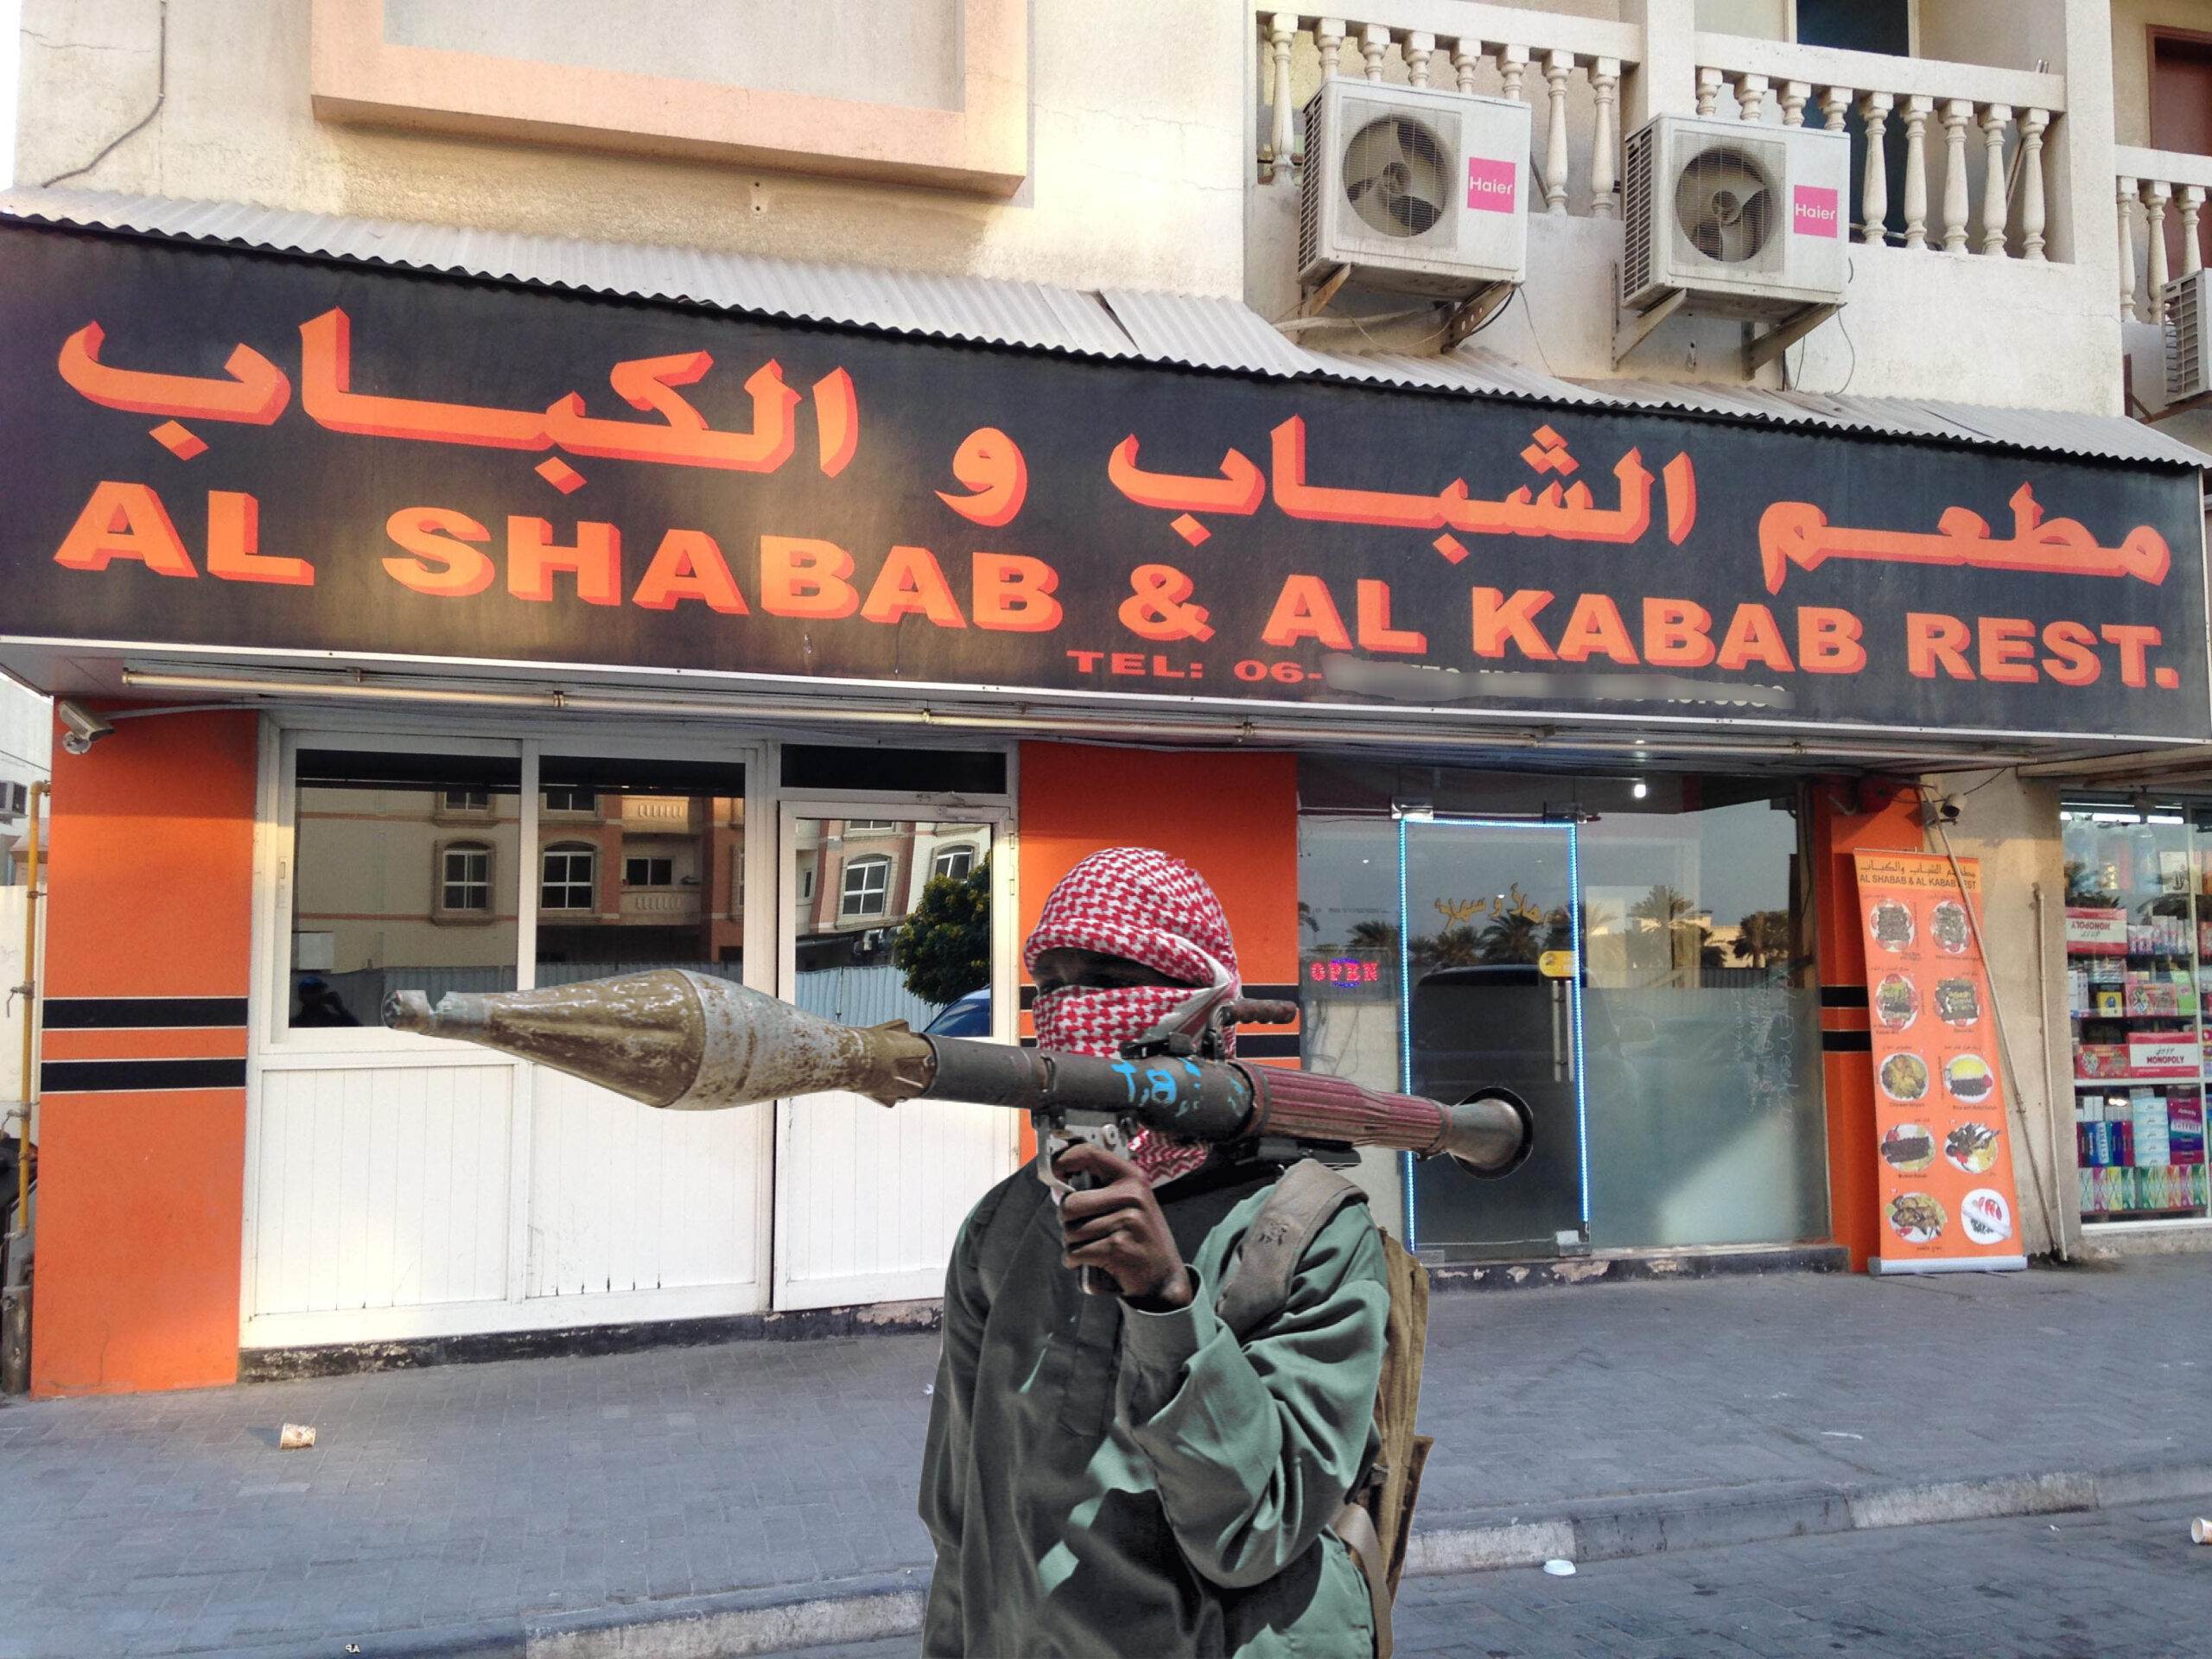 Al-Shabab: A Threat Beyond Somalia